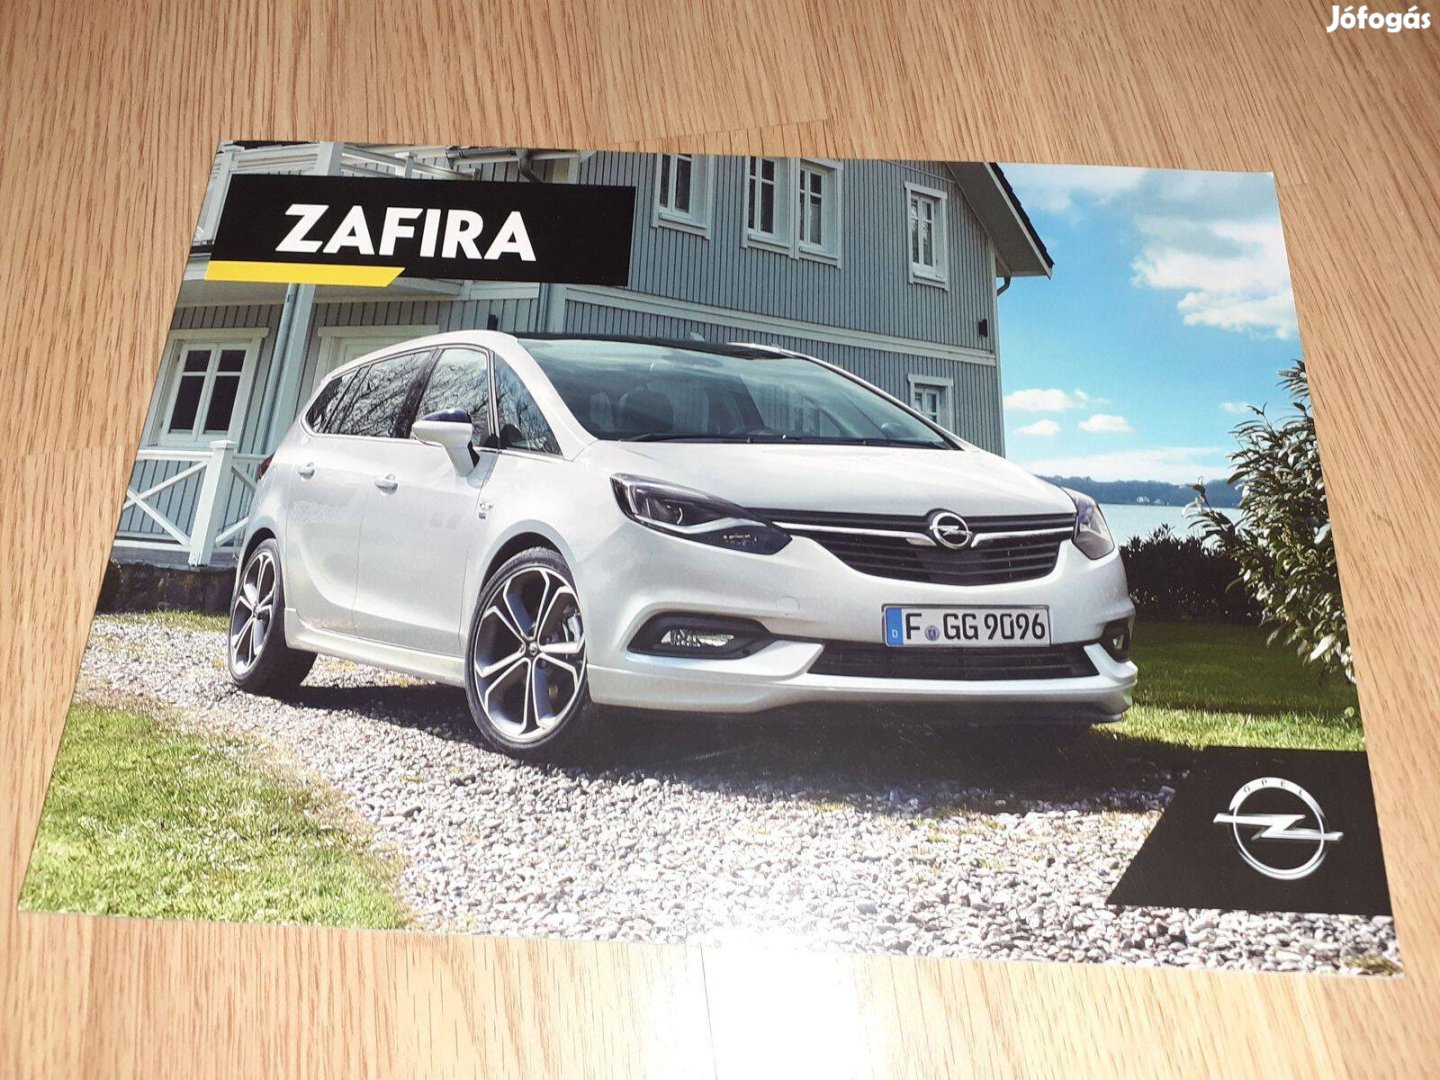 Opel Zafira prospektus - 2017, magyar nyelvű